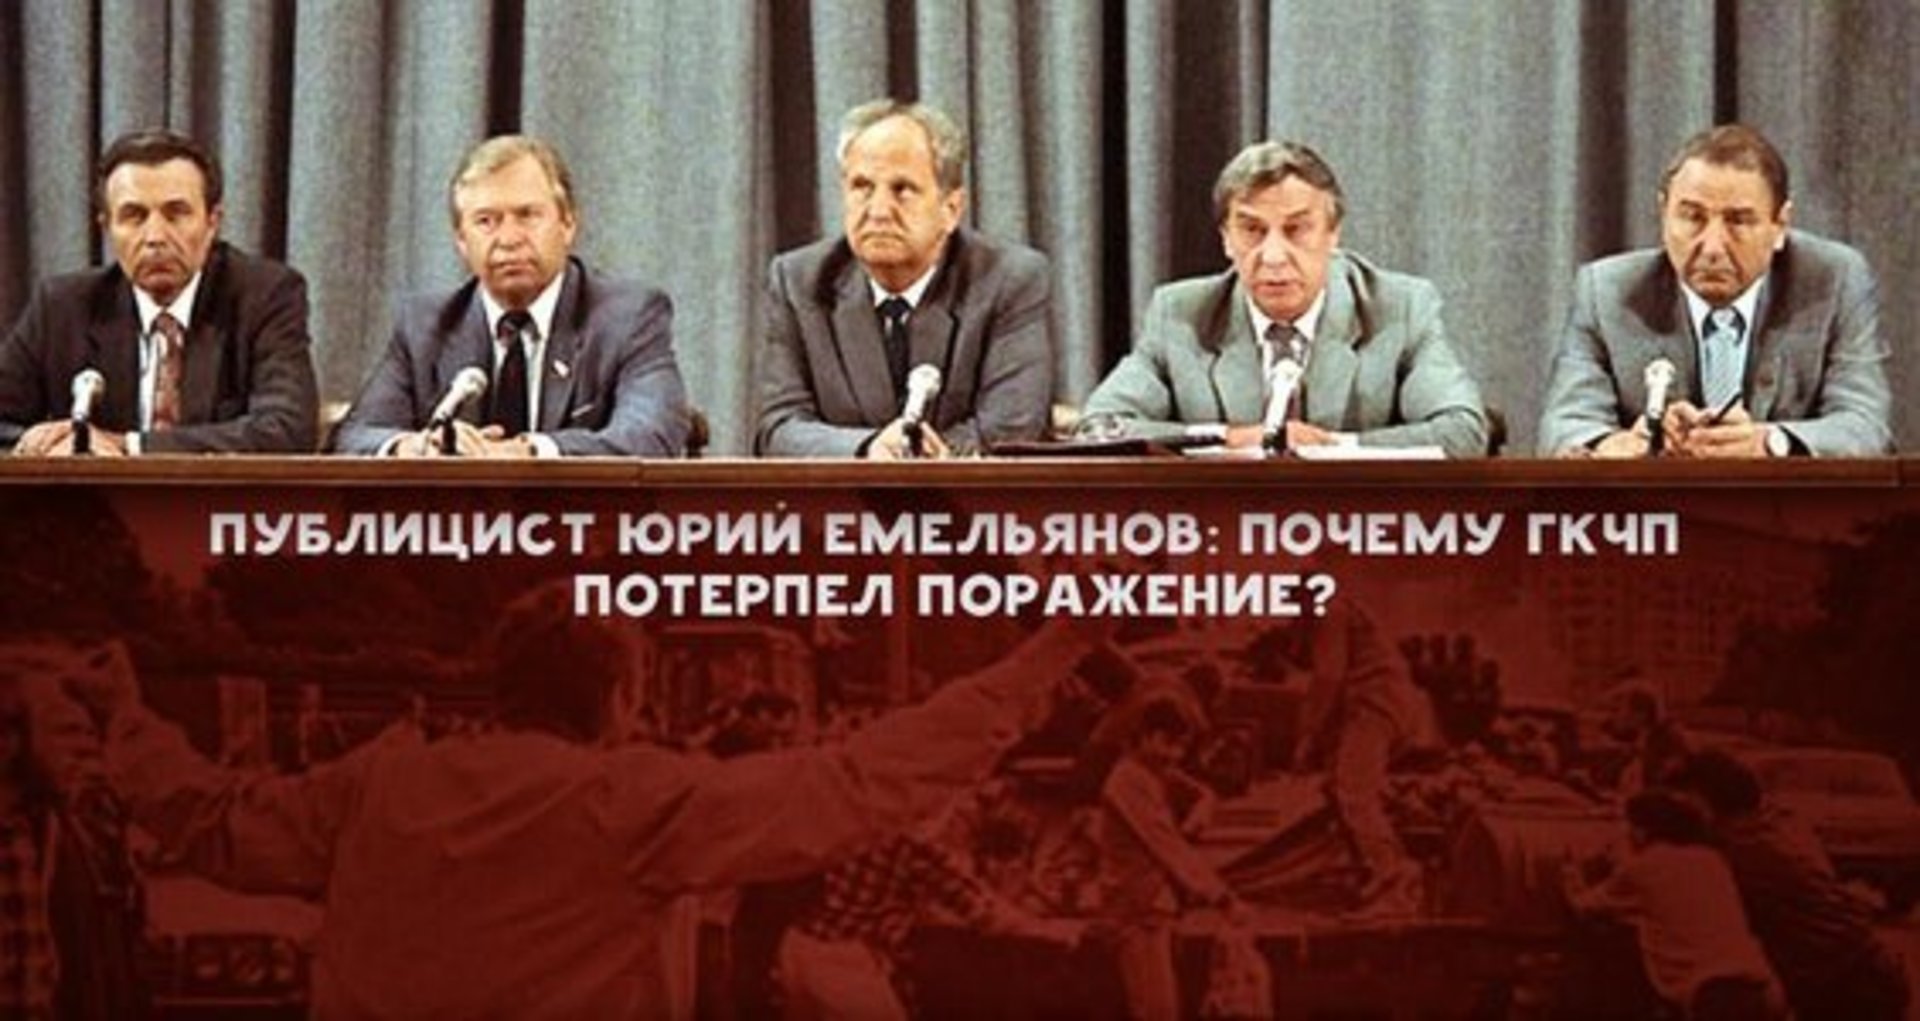 ГКЧП потерпел поражение в августе 1991 г